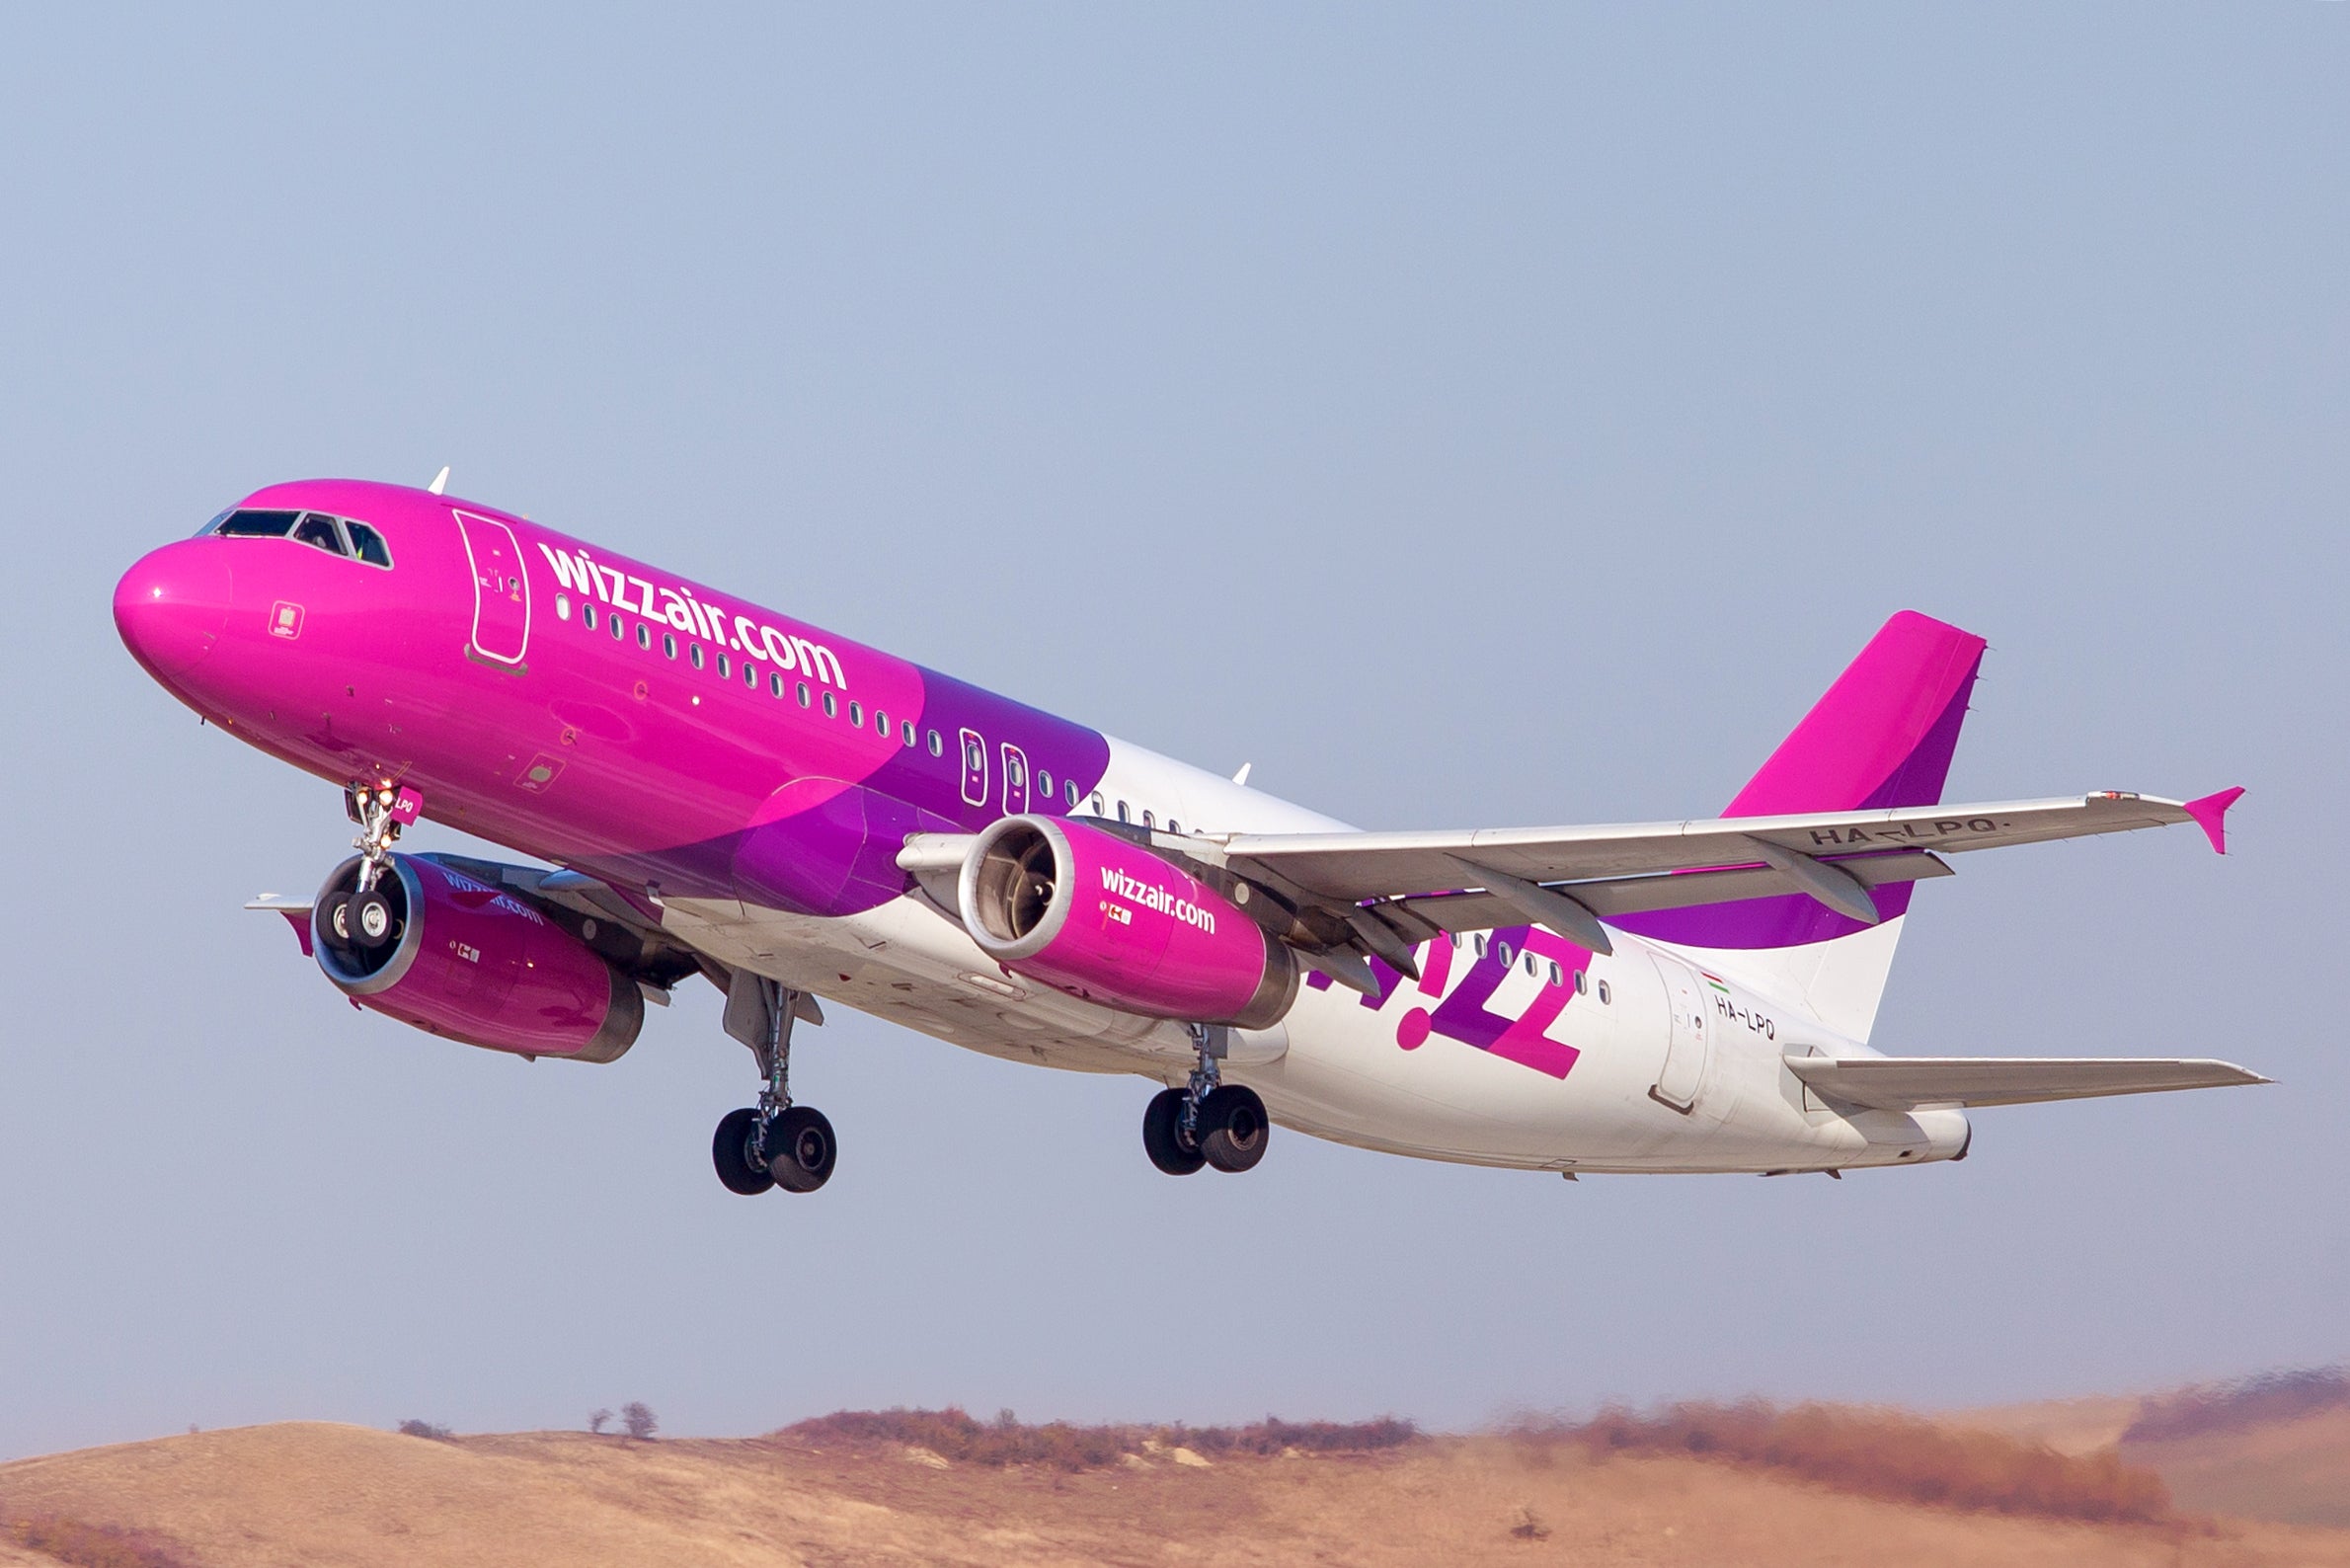 W iz. Wizz Air a320. Wizz Air a320neo. Wizz Air Cargo a220. Wizz Air Abu Dhabi авиакомпания.